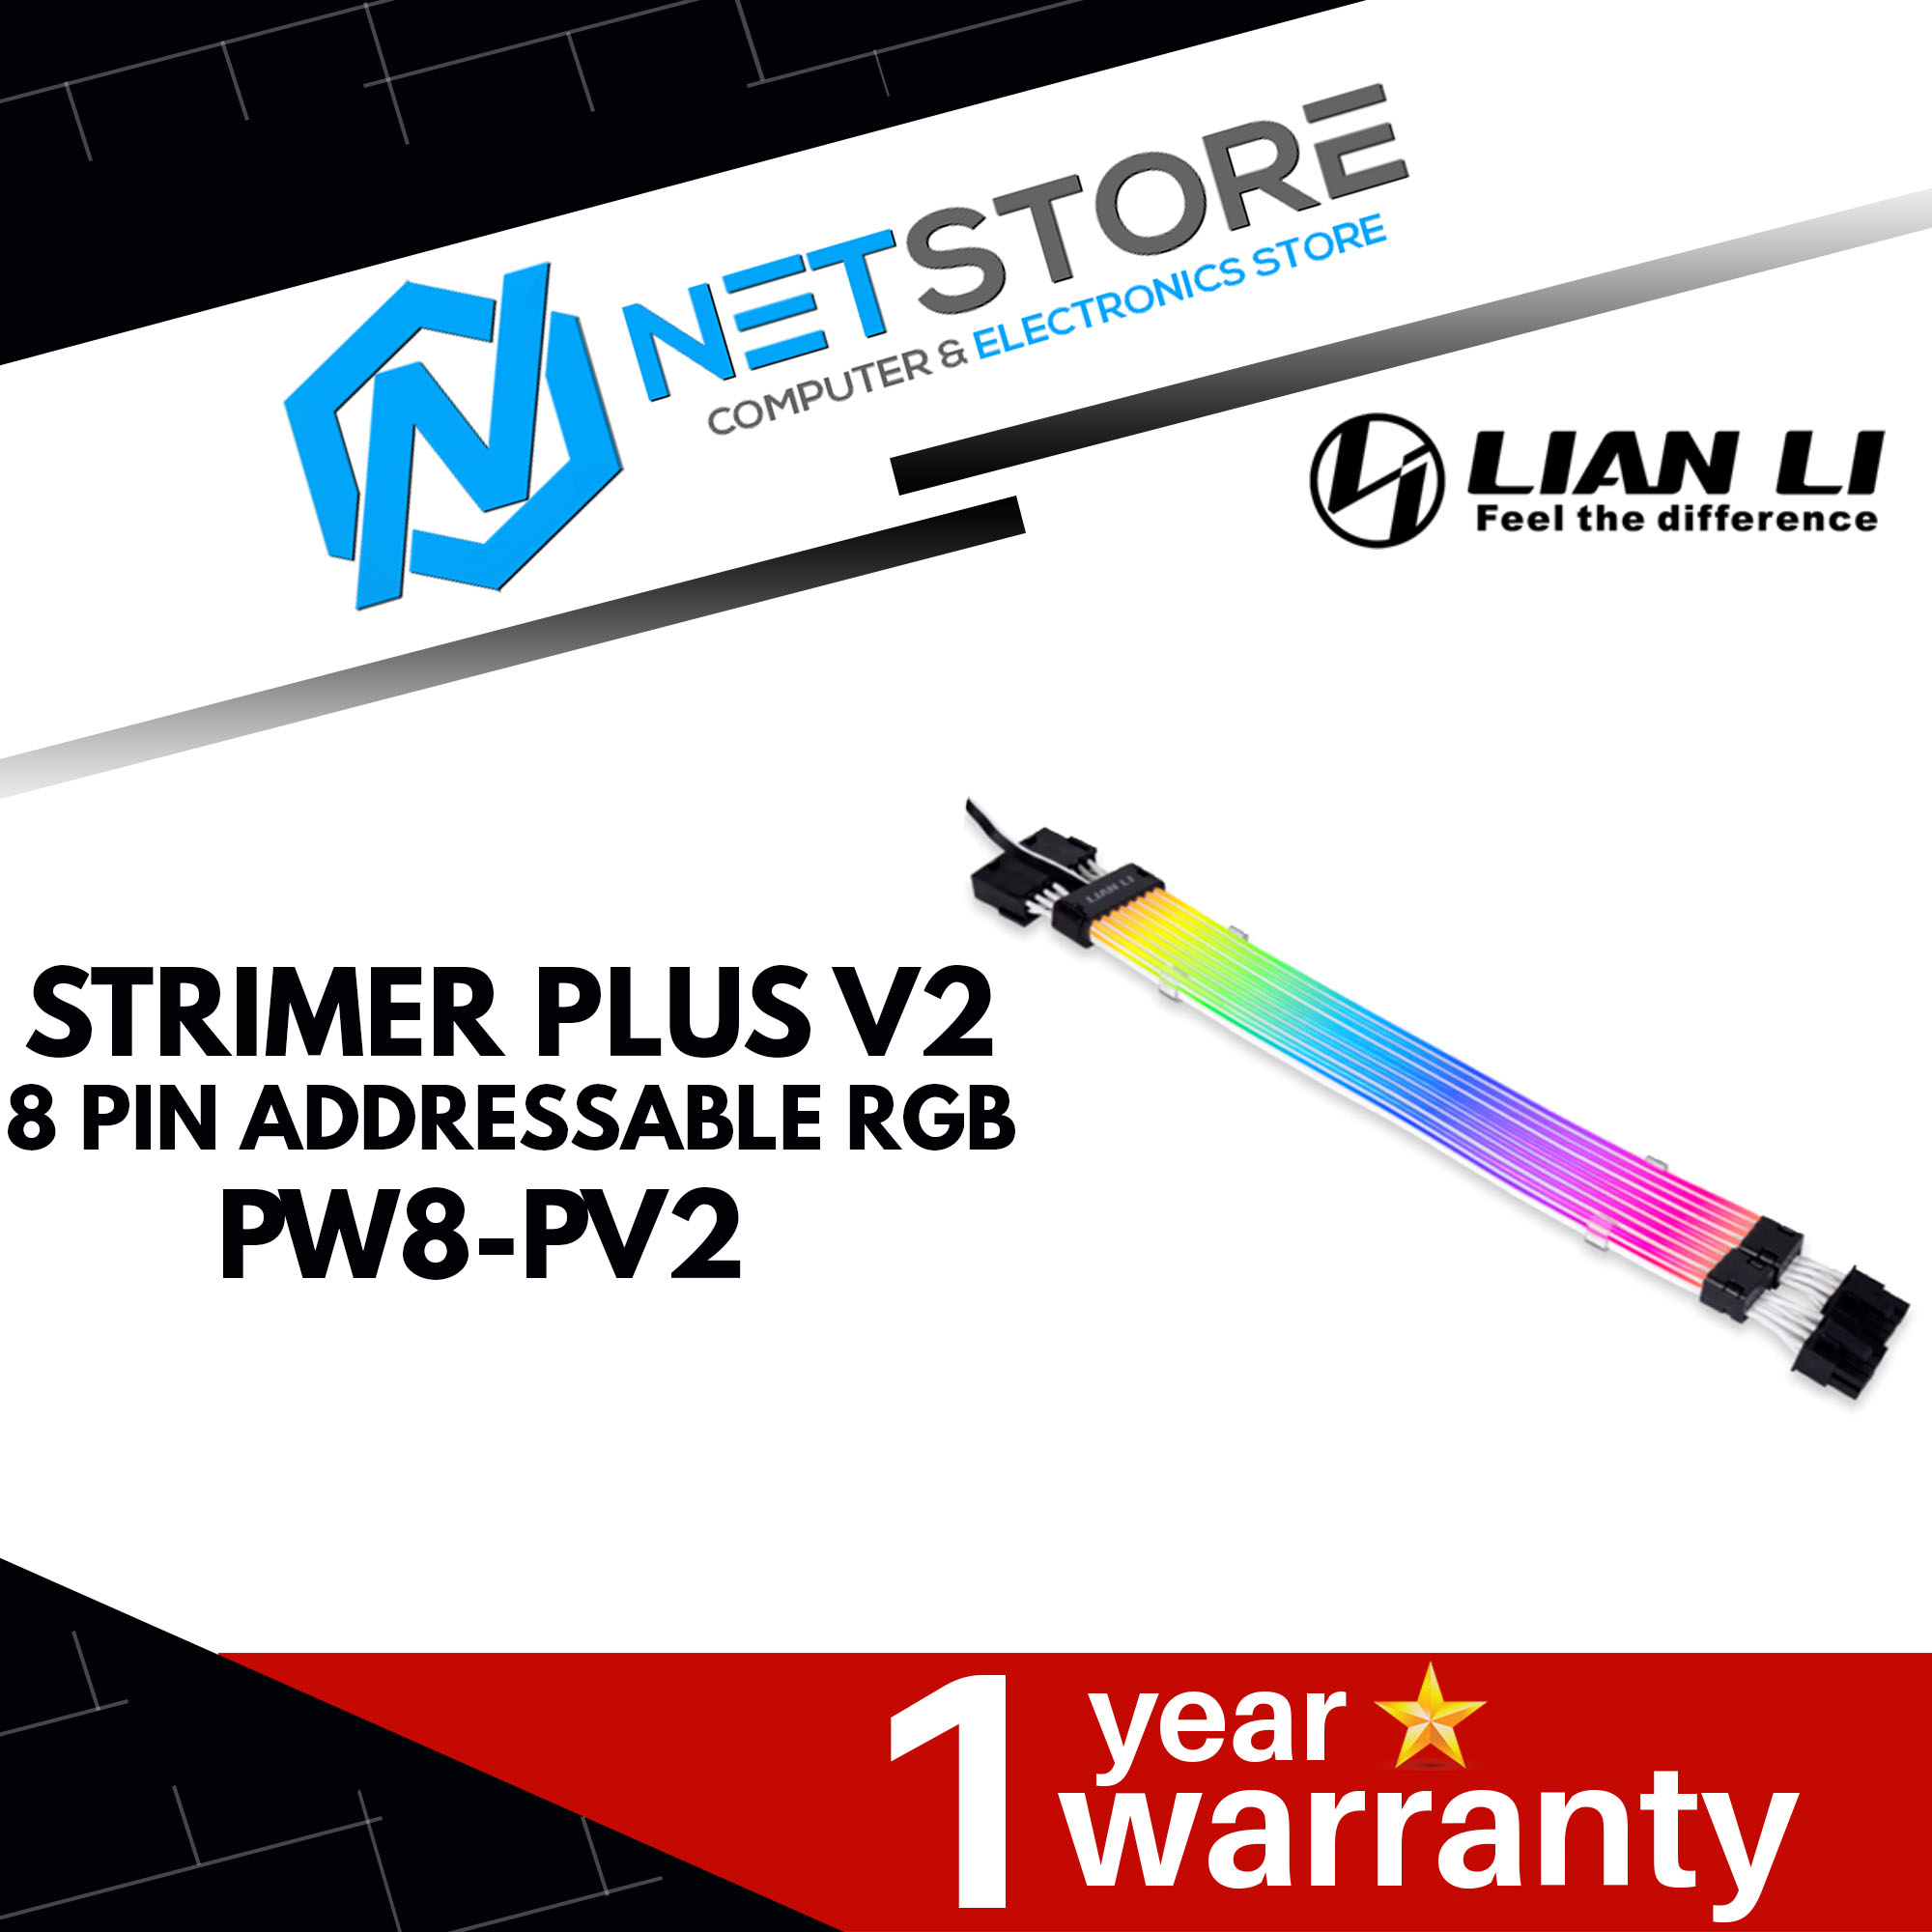 LIAN LI STRIMER PLUS V2 8 PIN ADDRESSABLE RGB - PW8-PV2